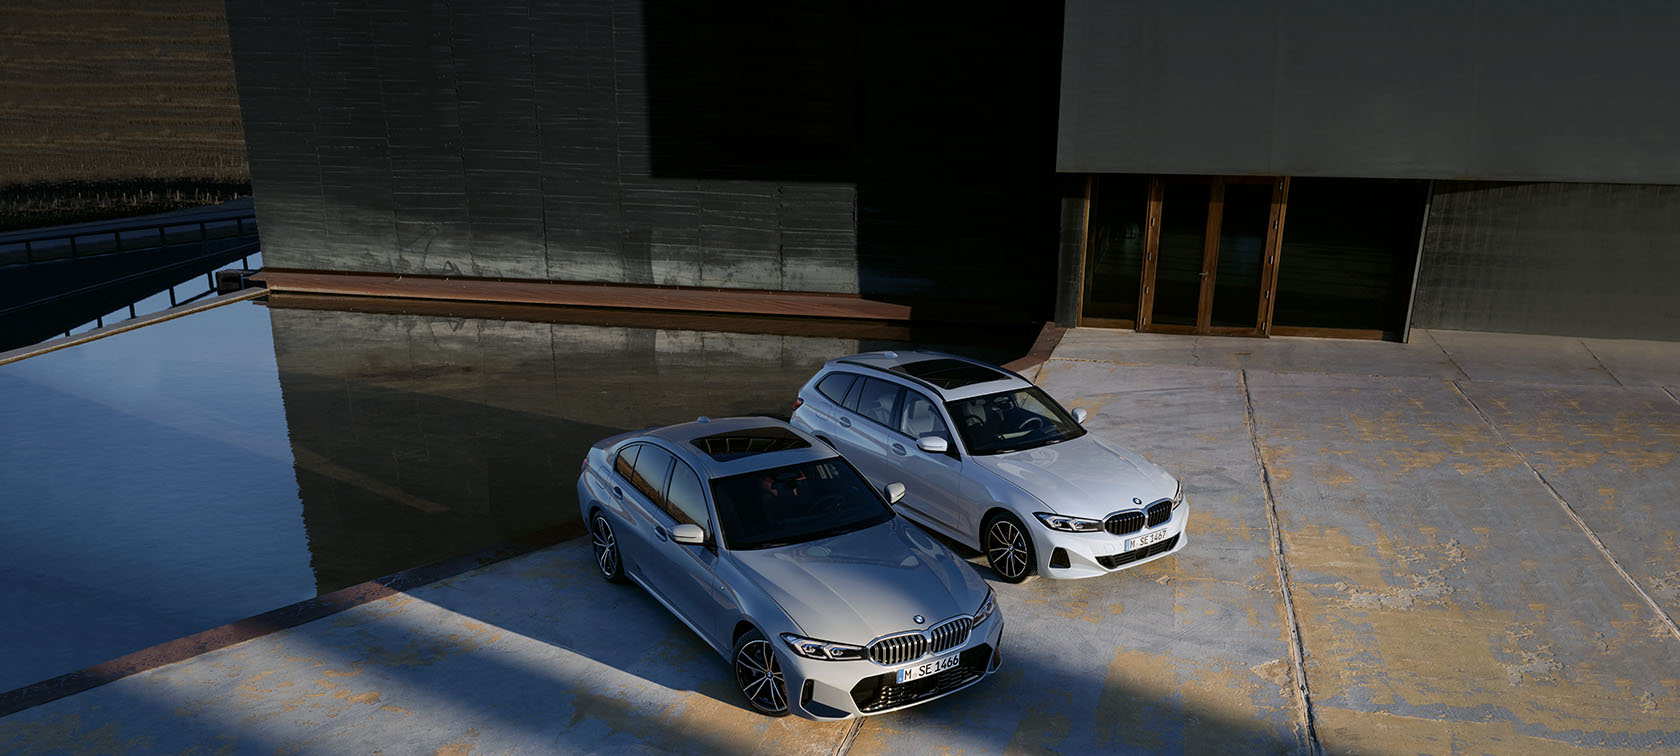 Hubauer GmbH: BMW Fahrzeuge, Services, Angebote u.v.m.